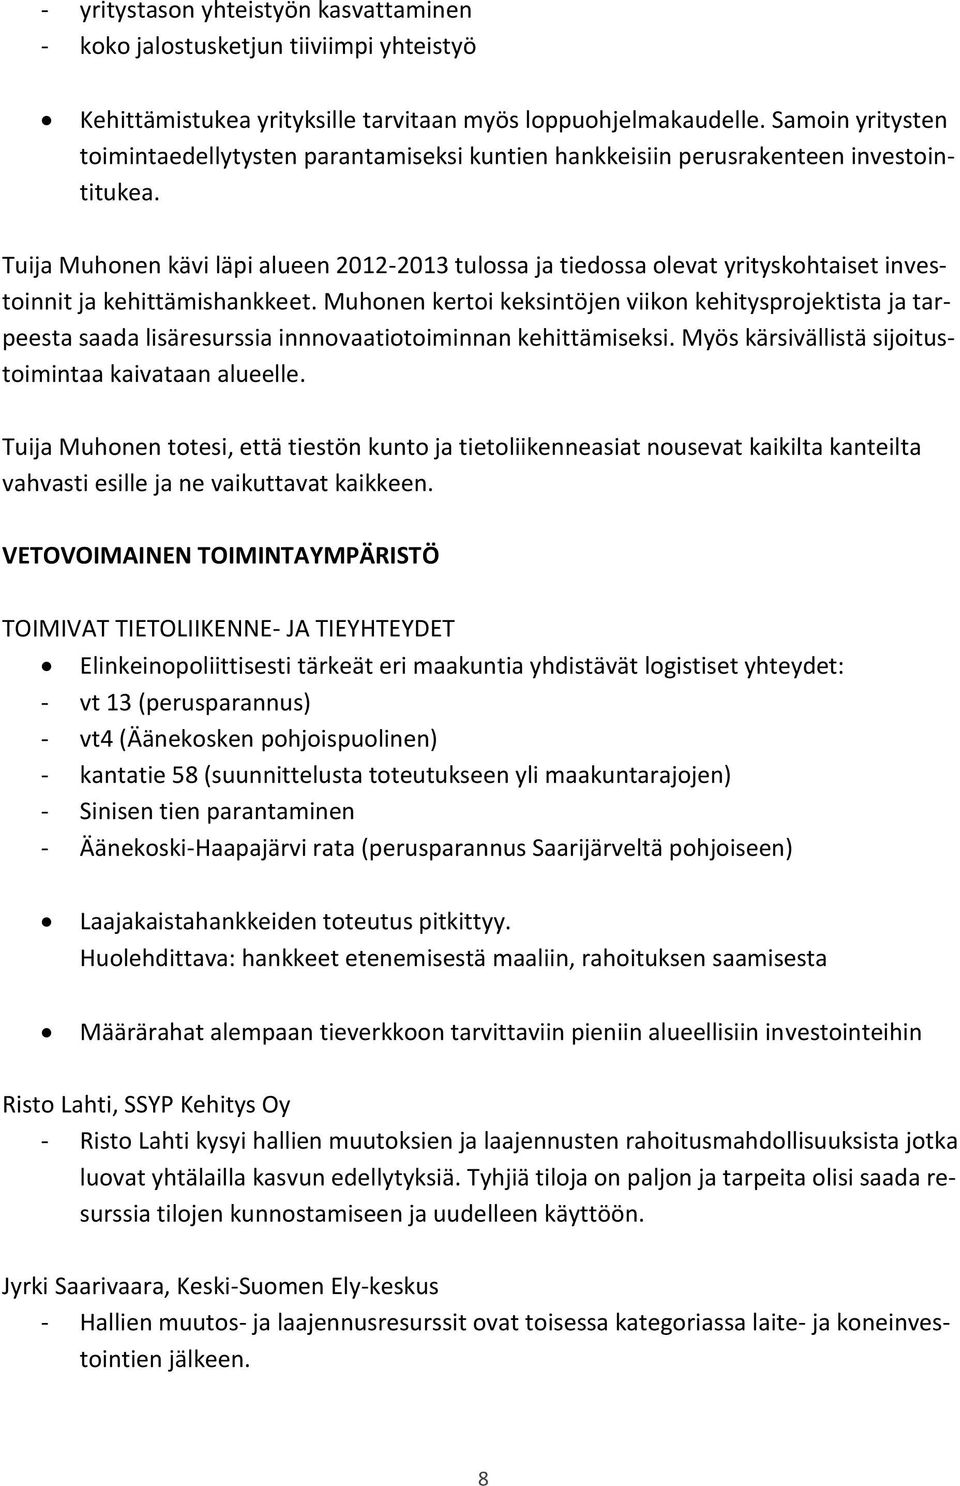 Tuija Muhonen kävi läpi alueen 2012-2013 tulossa ja tiedossa olevat yrityskohtaiset investoinnit ja kehittämishankkeet.